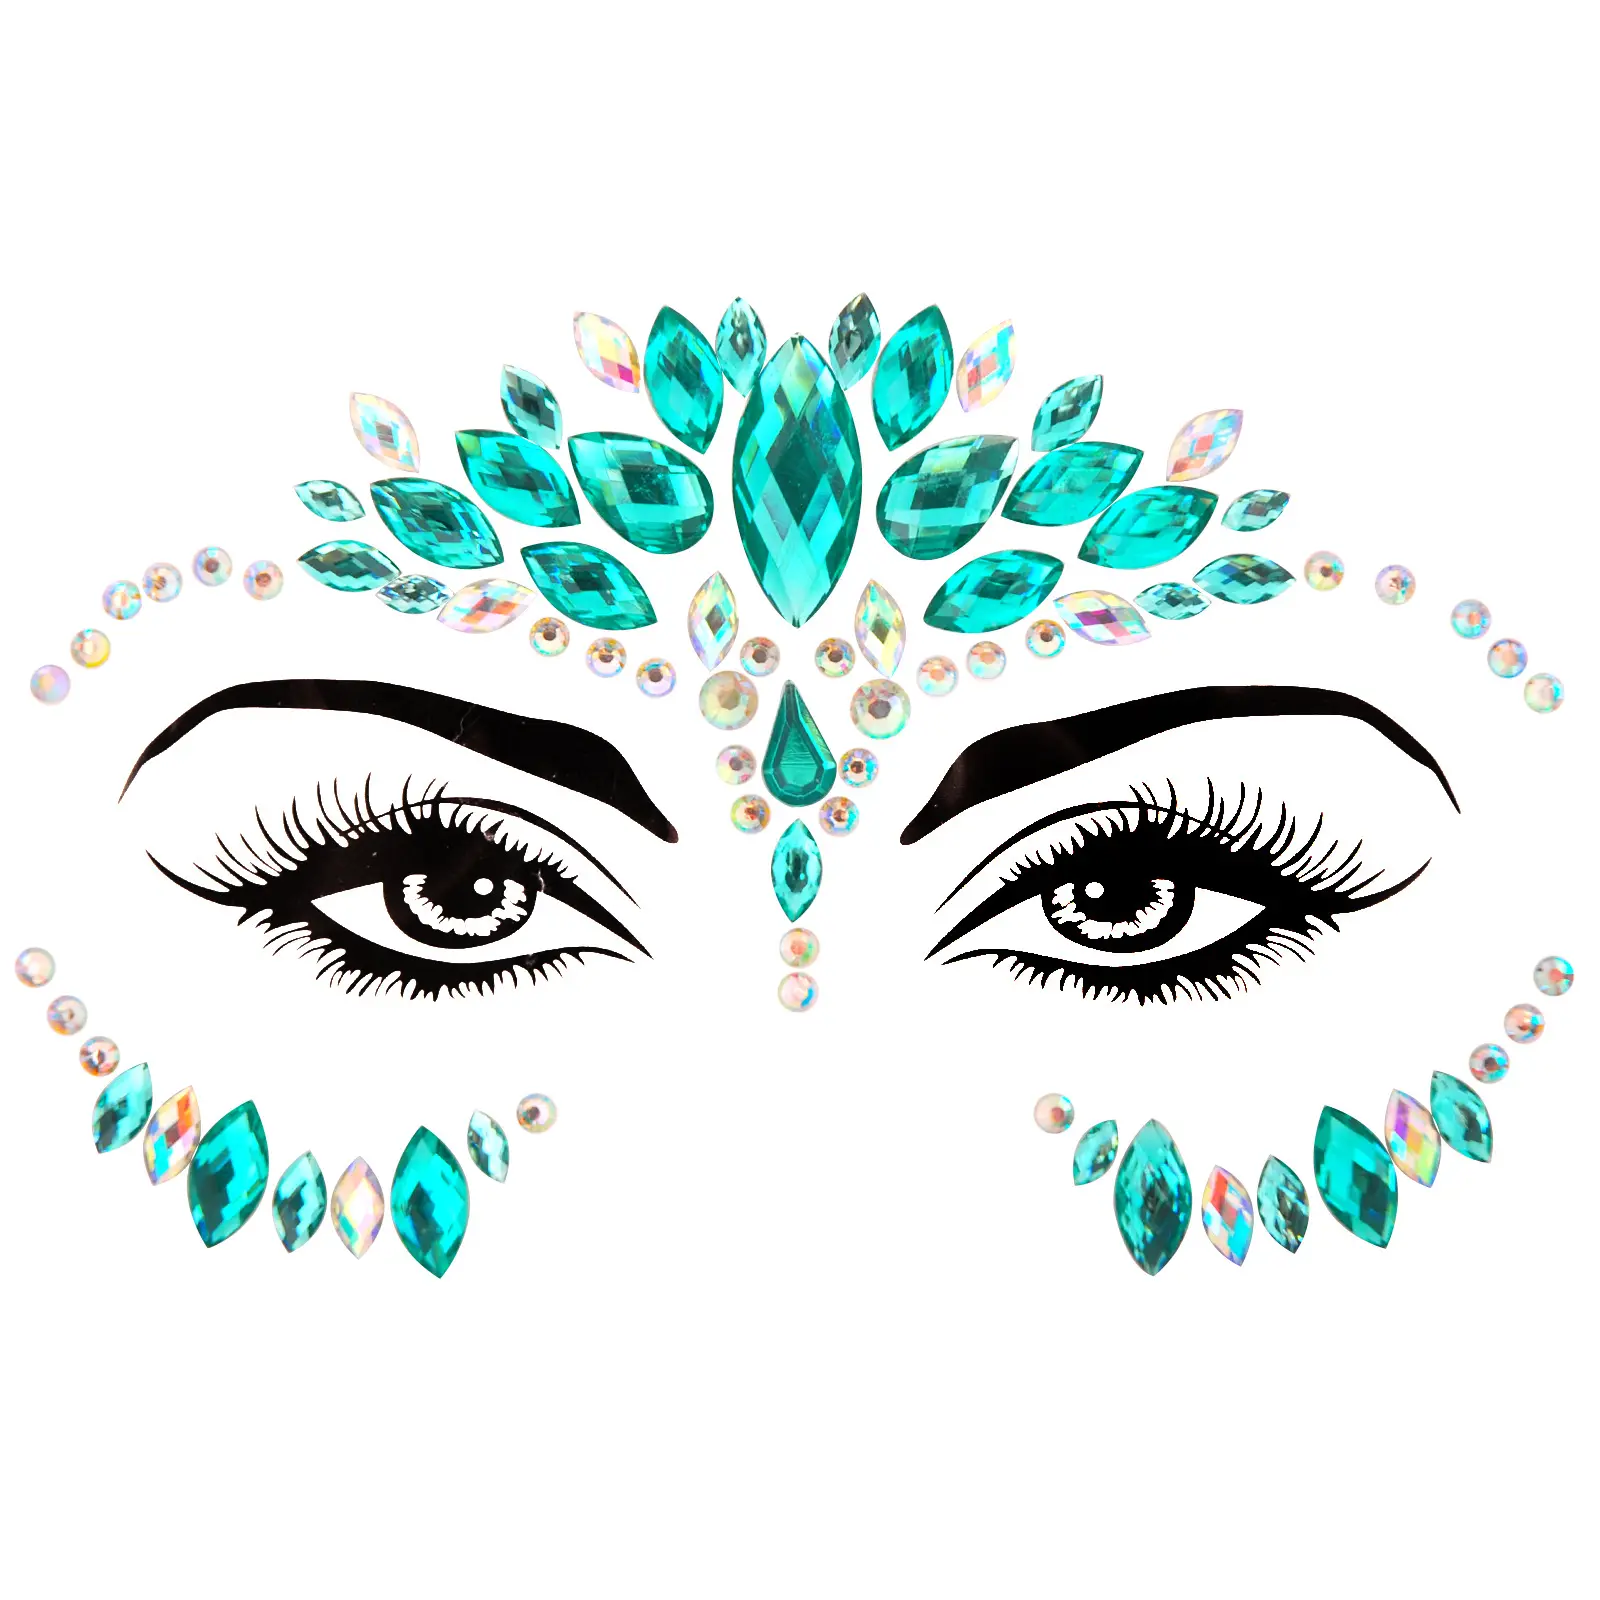 Strass de diamante para maquiagem personalizada 3d, adesivos de strass com cristais para olho e corpo